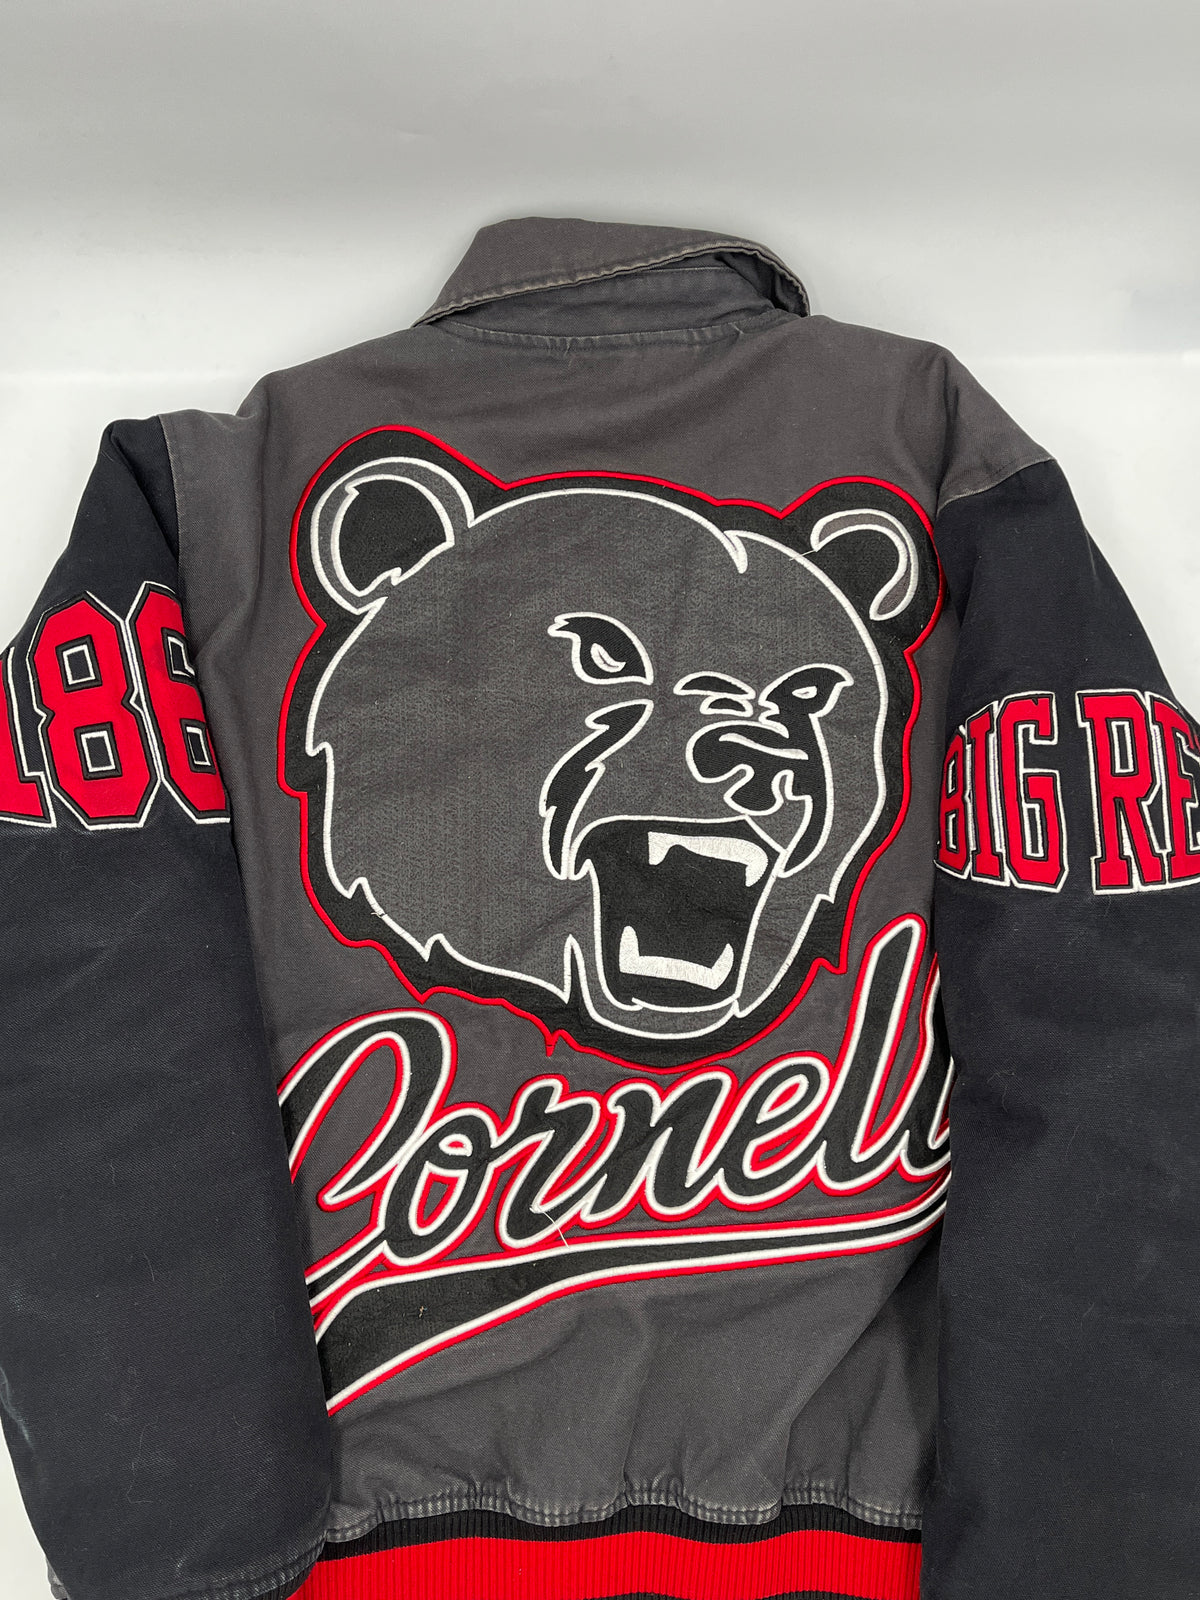 Vintage Cornell Varsity Jacket